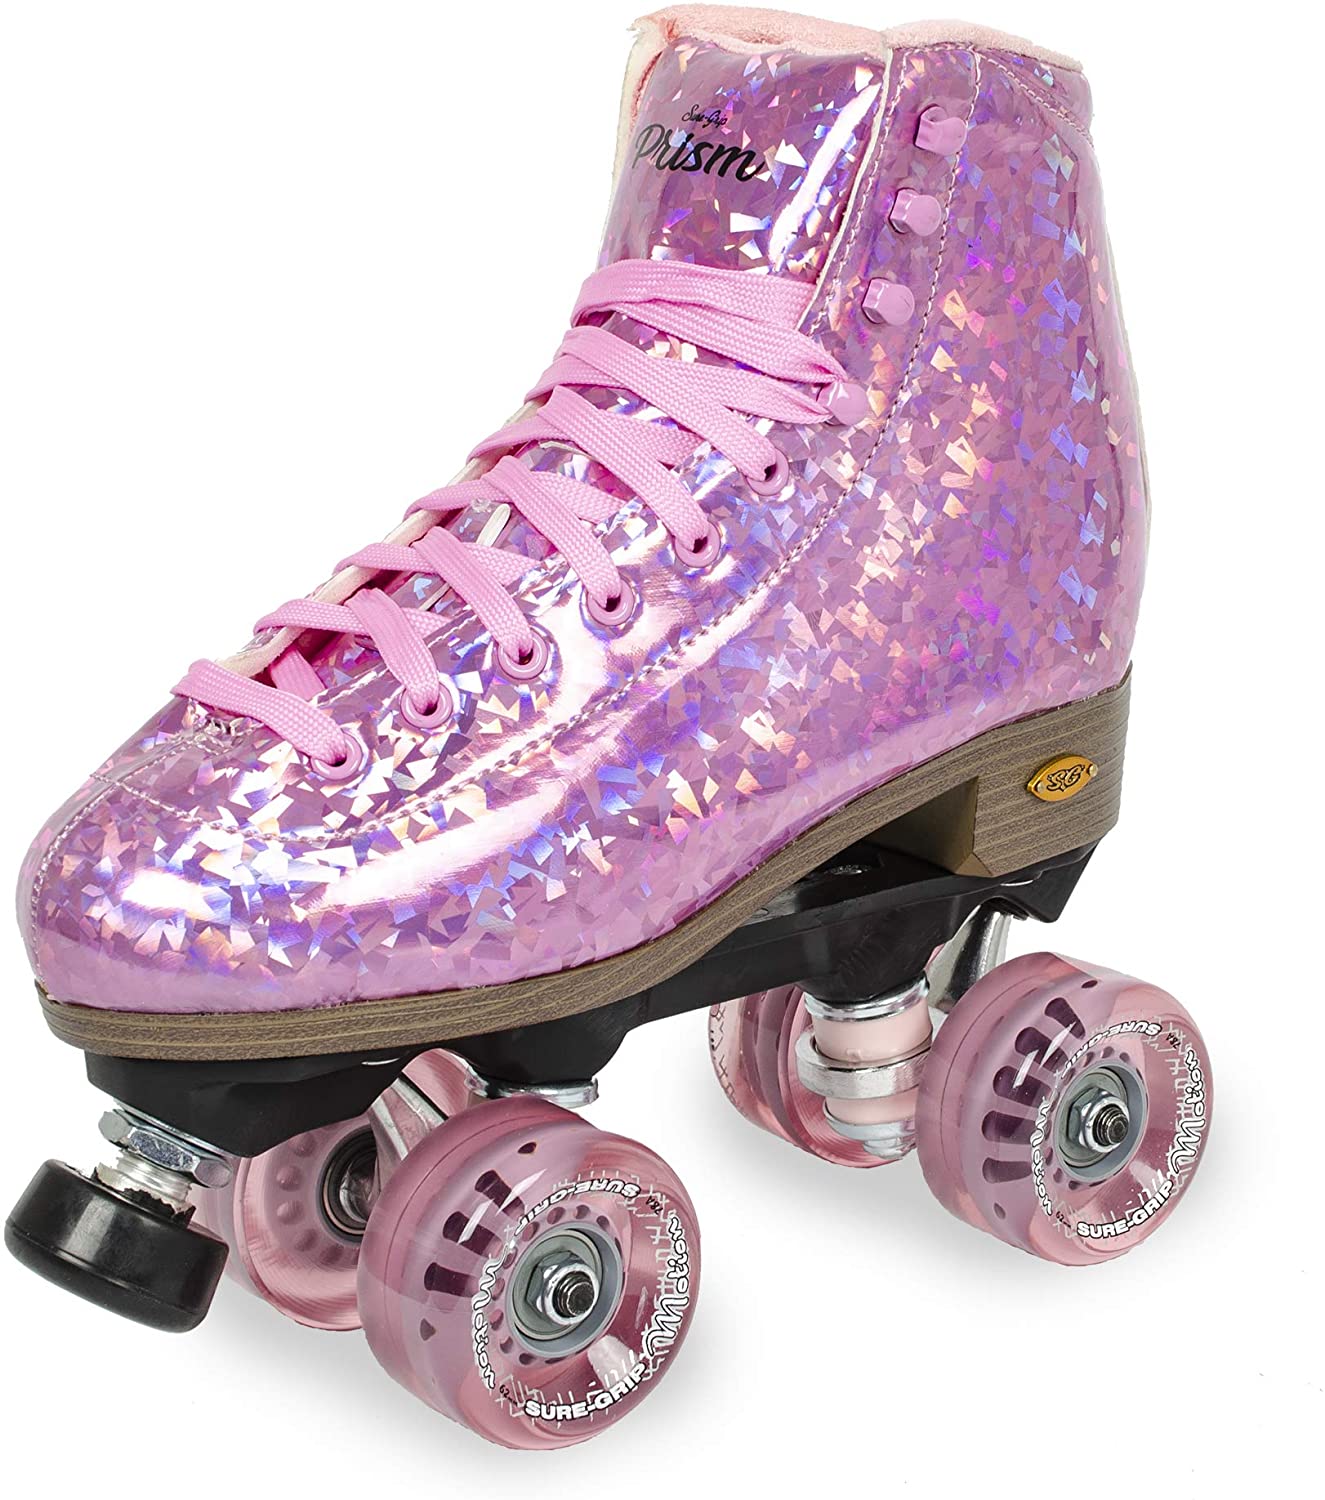 lavendel Spekulerer cykel Sure Grip Prism Plus Pink Limited Edition Skates – Roller World, Inc.